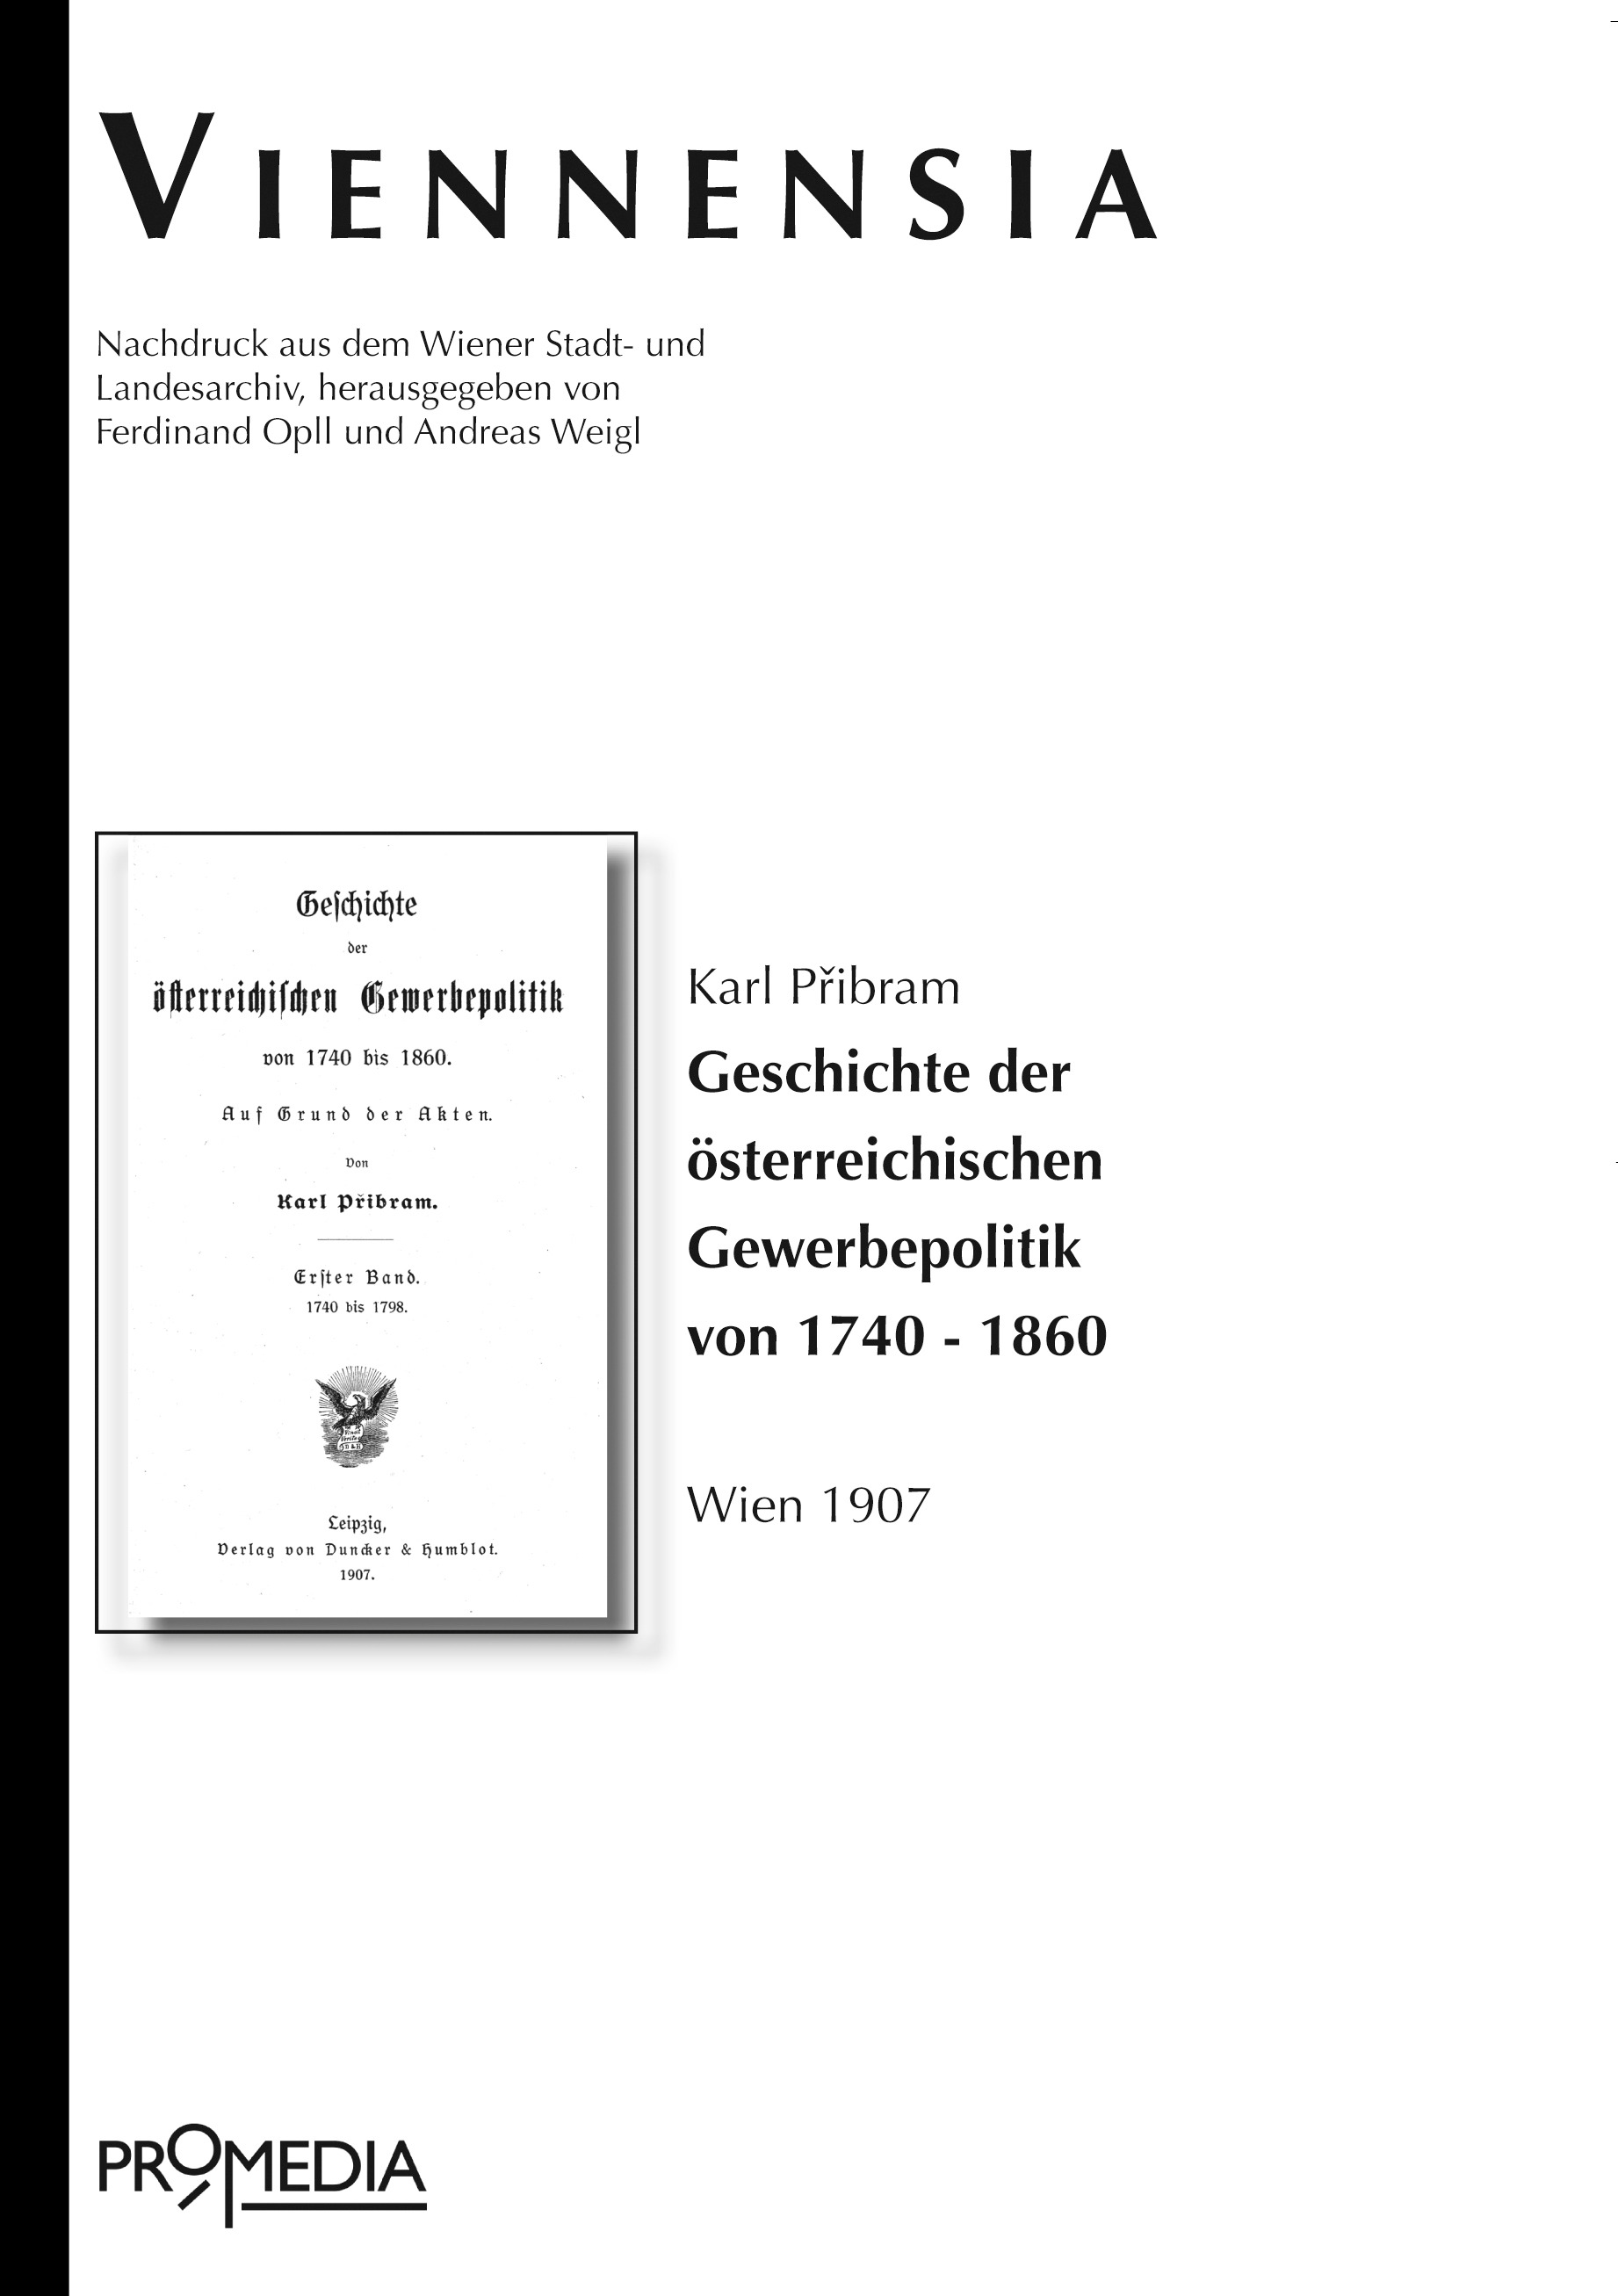 [Cover] Geschichte der österreichischen Gewerbepolitik von 1740 - 1860